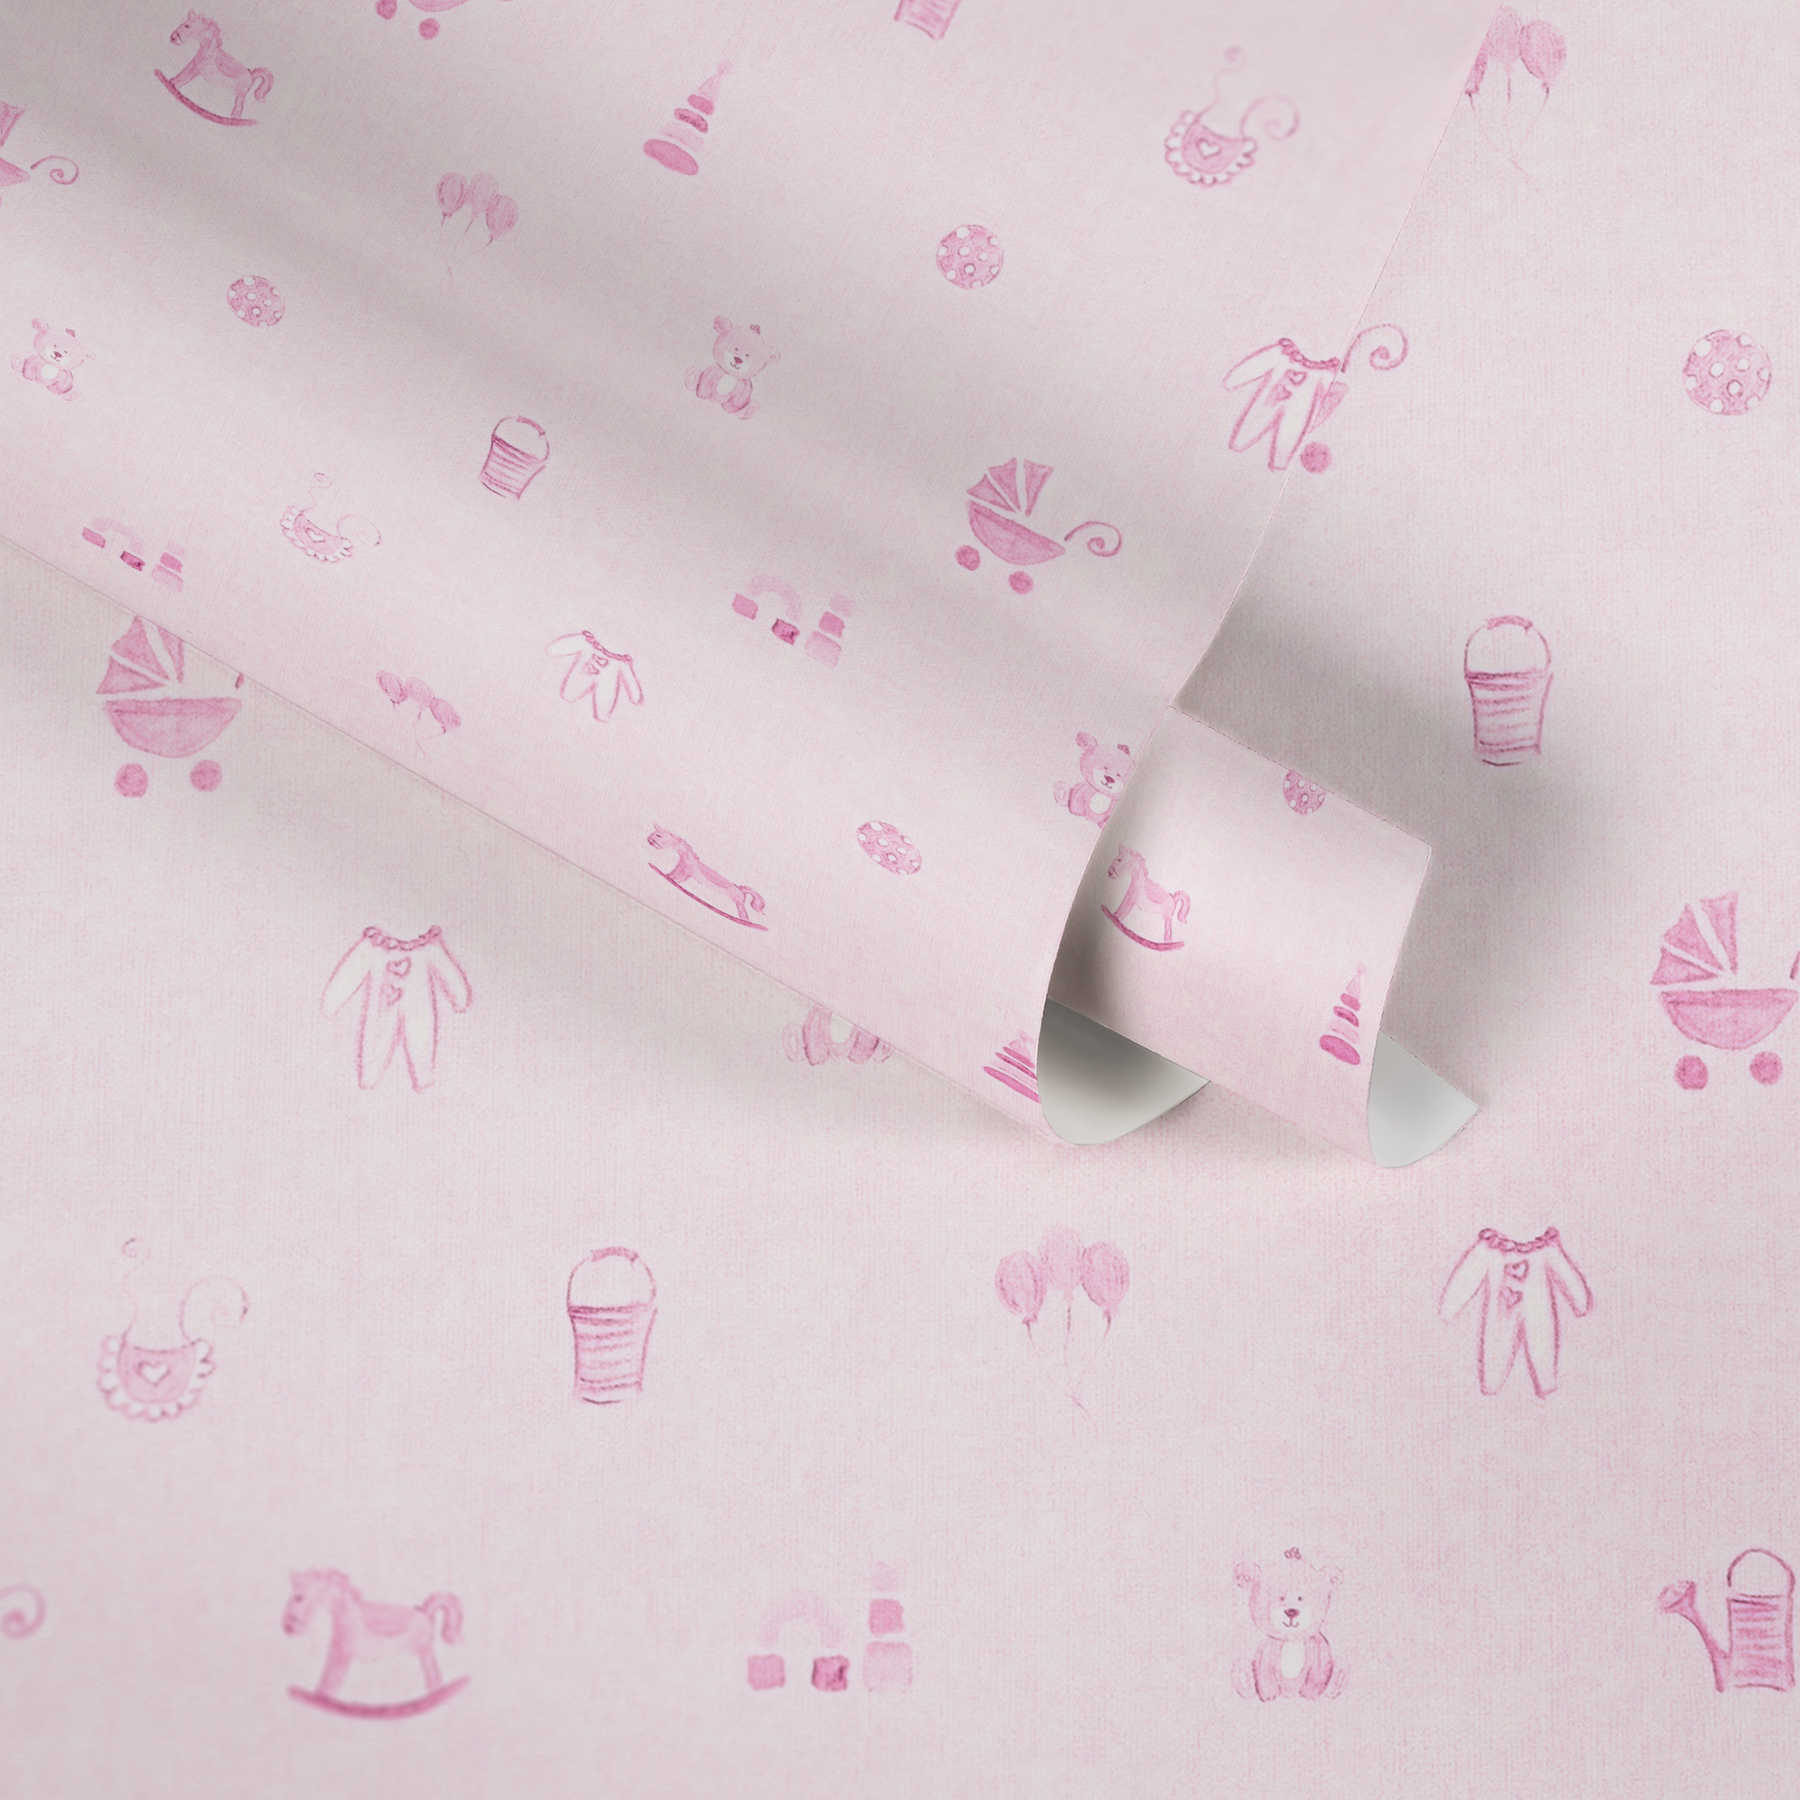             Mooi babykamerbehang voor meisjes met roze patroon
        